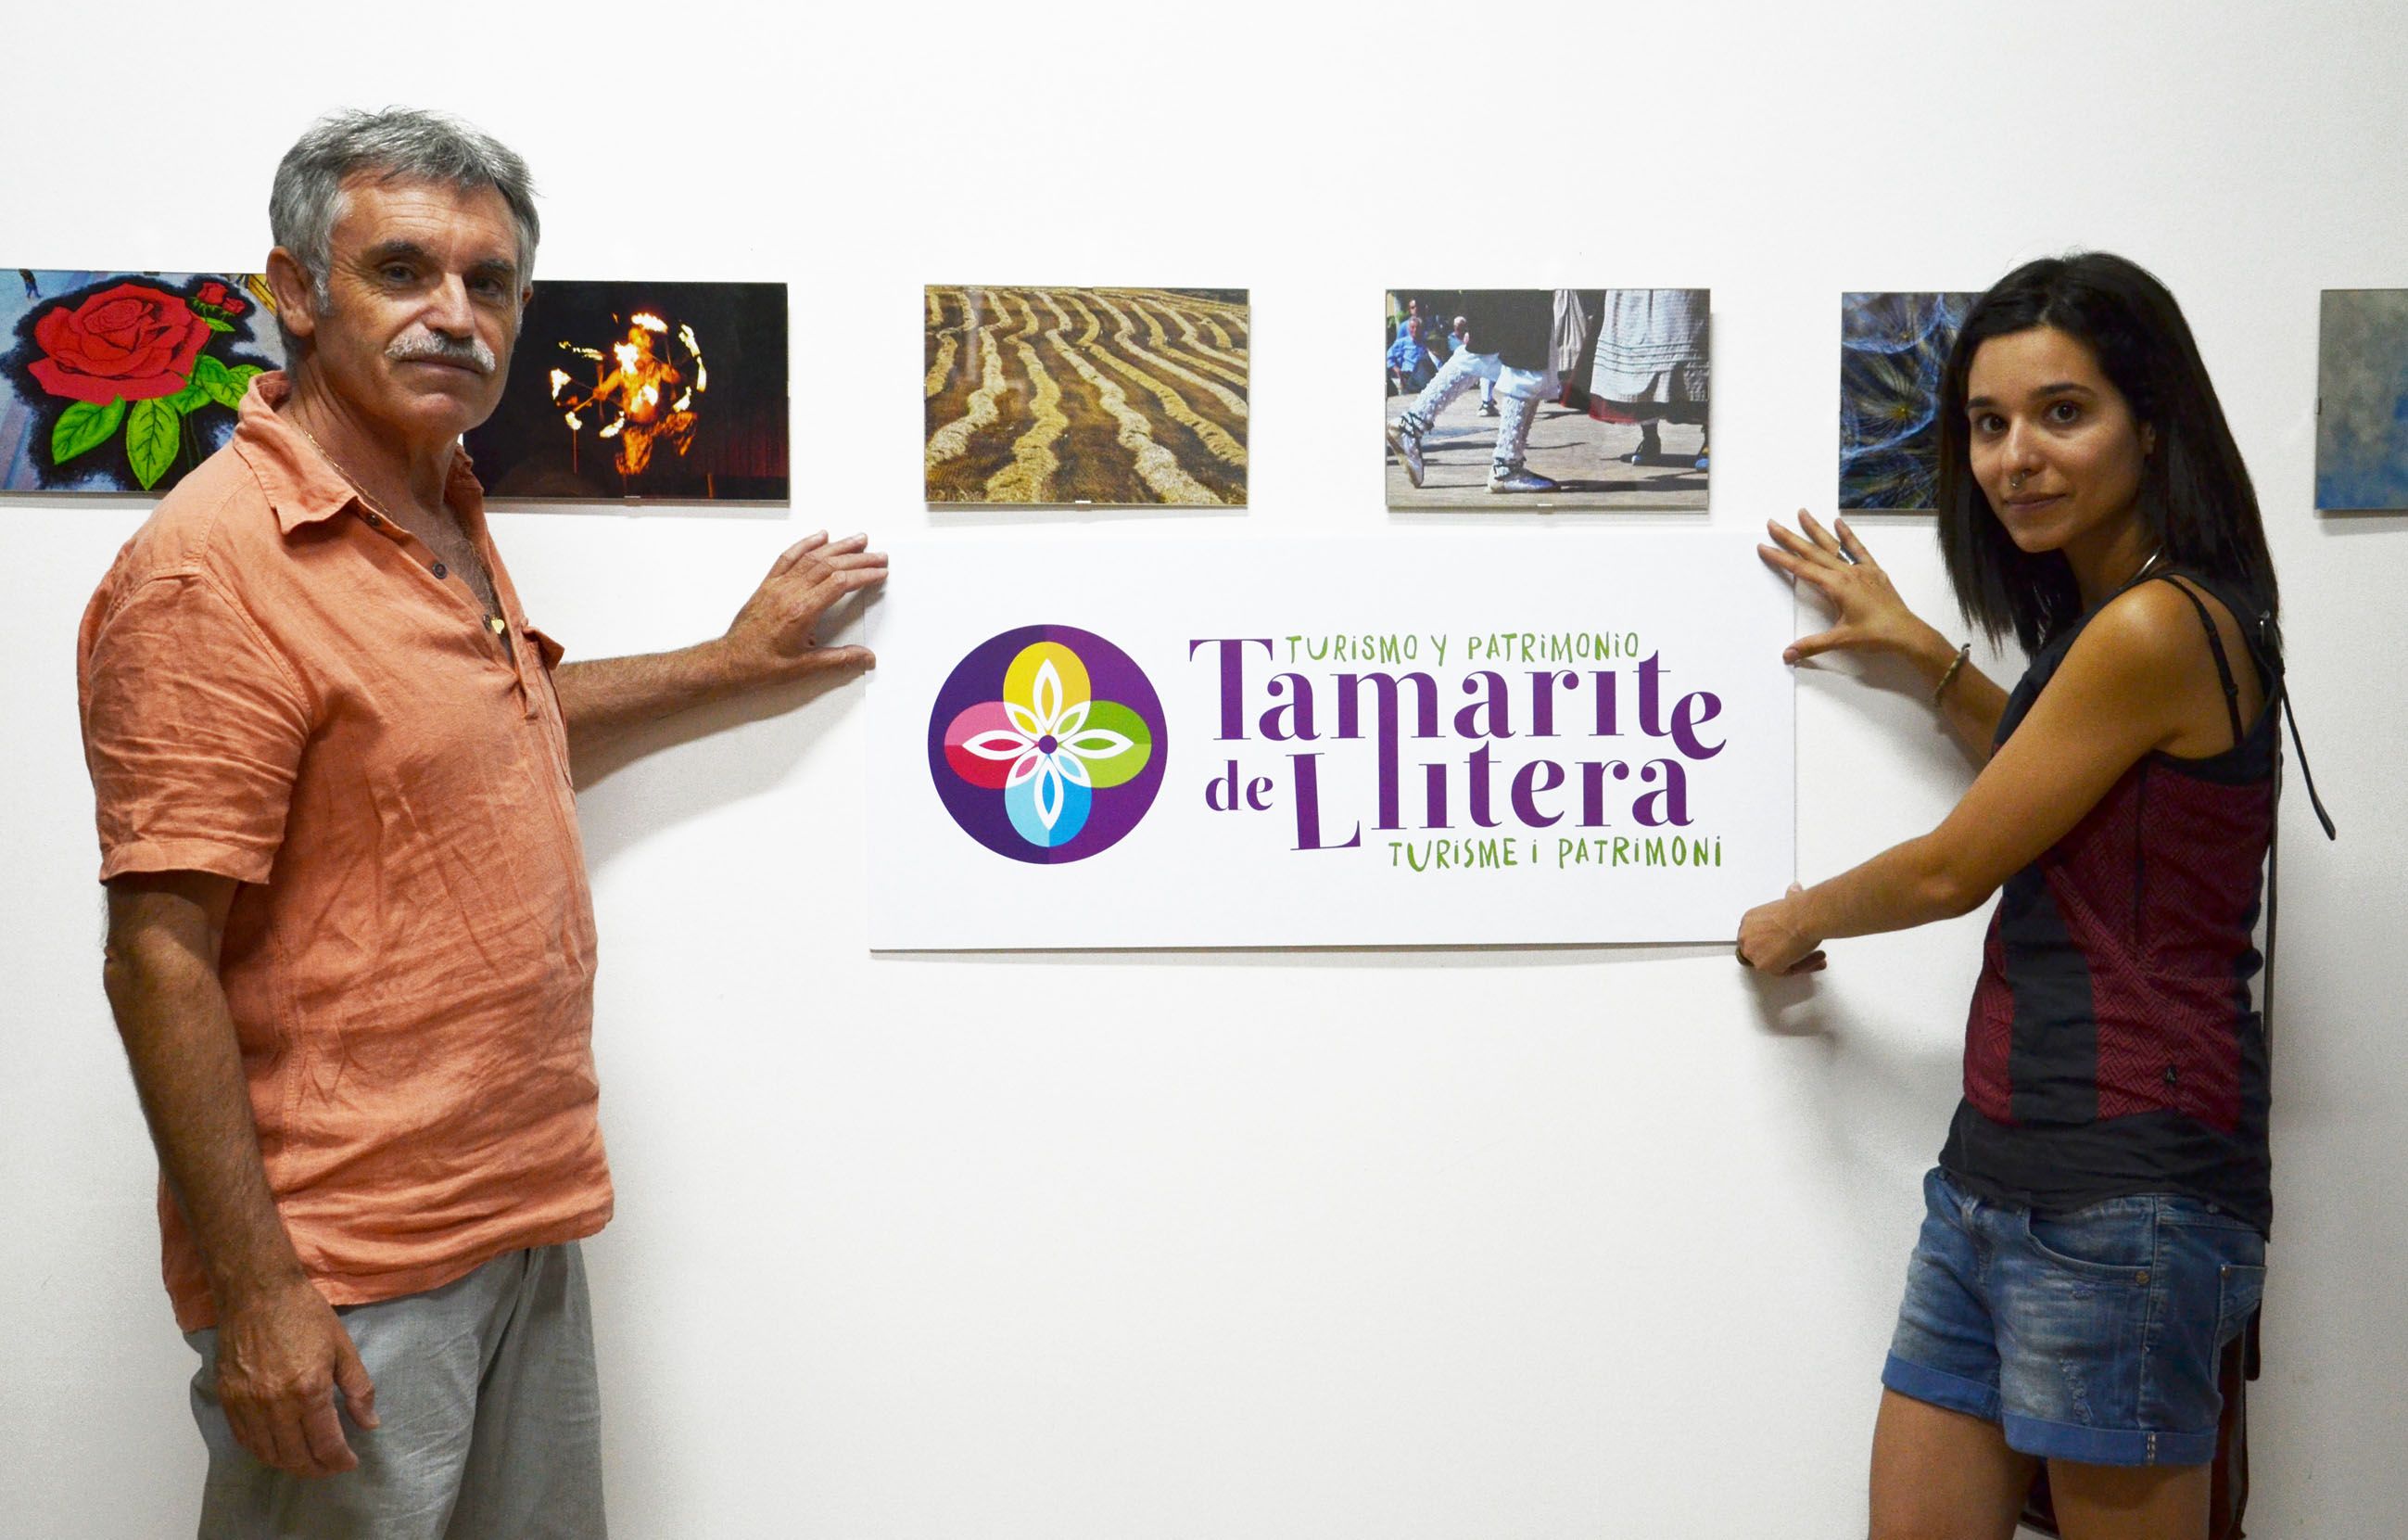 Origen y novedades del proyecto “Tamarite, Turismo y Patrimonio”